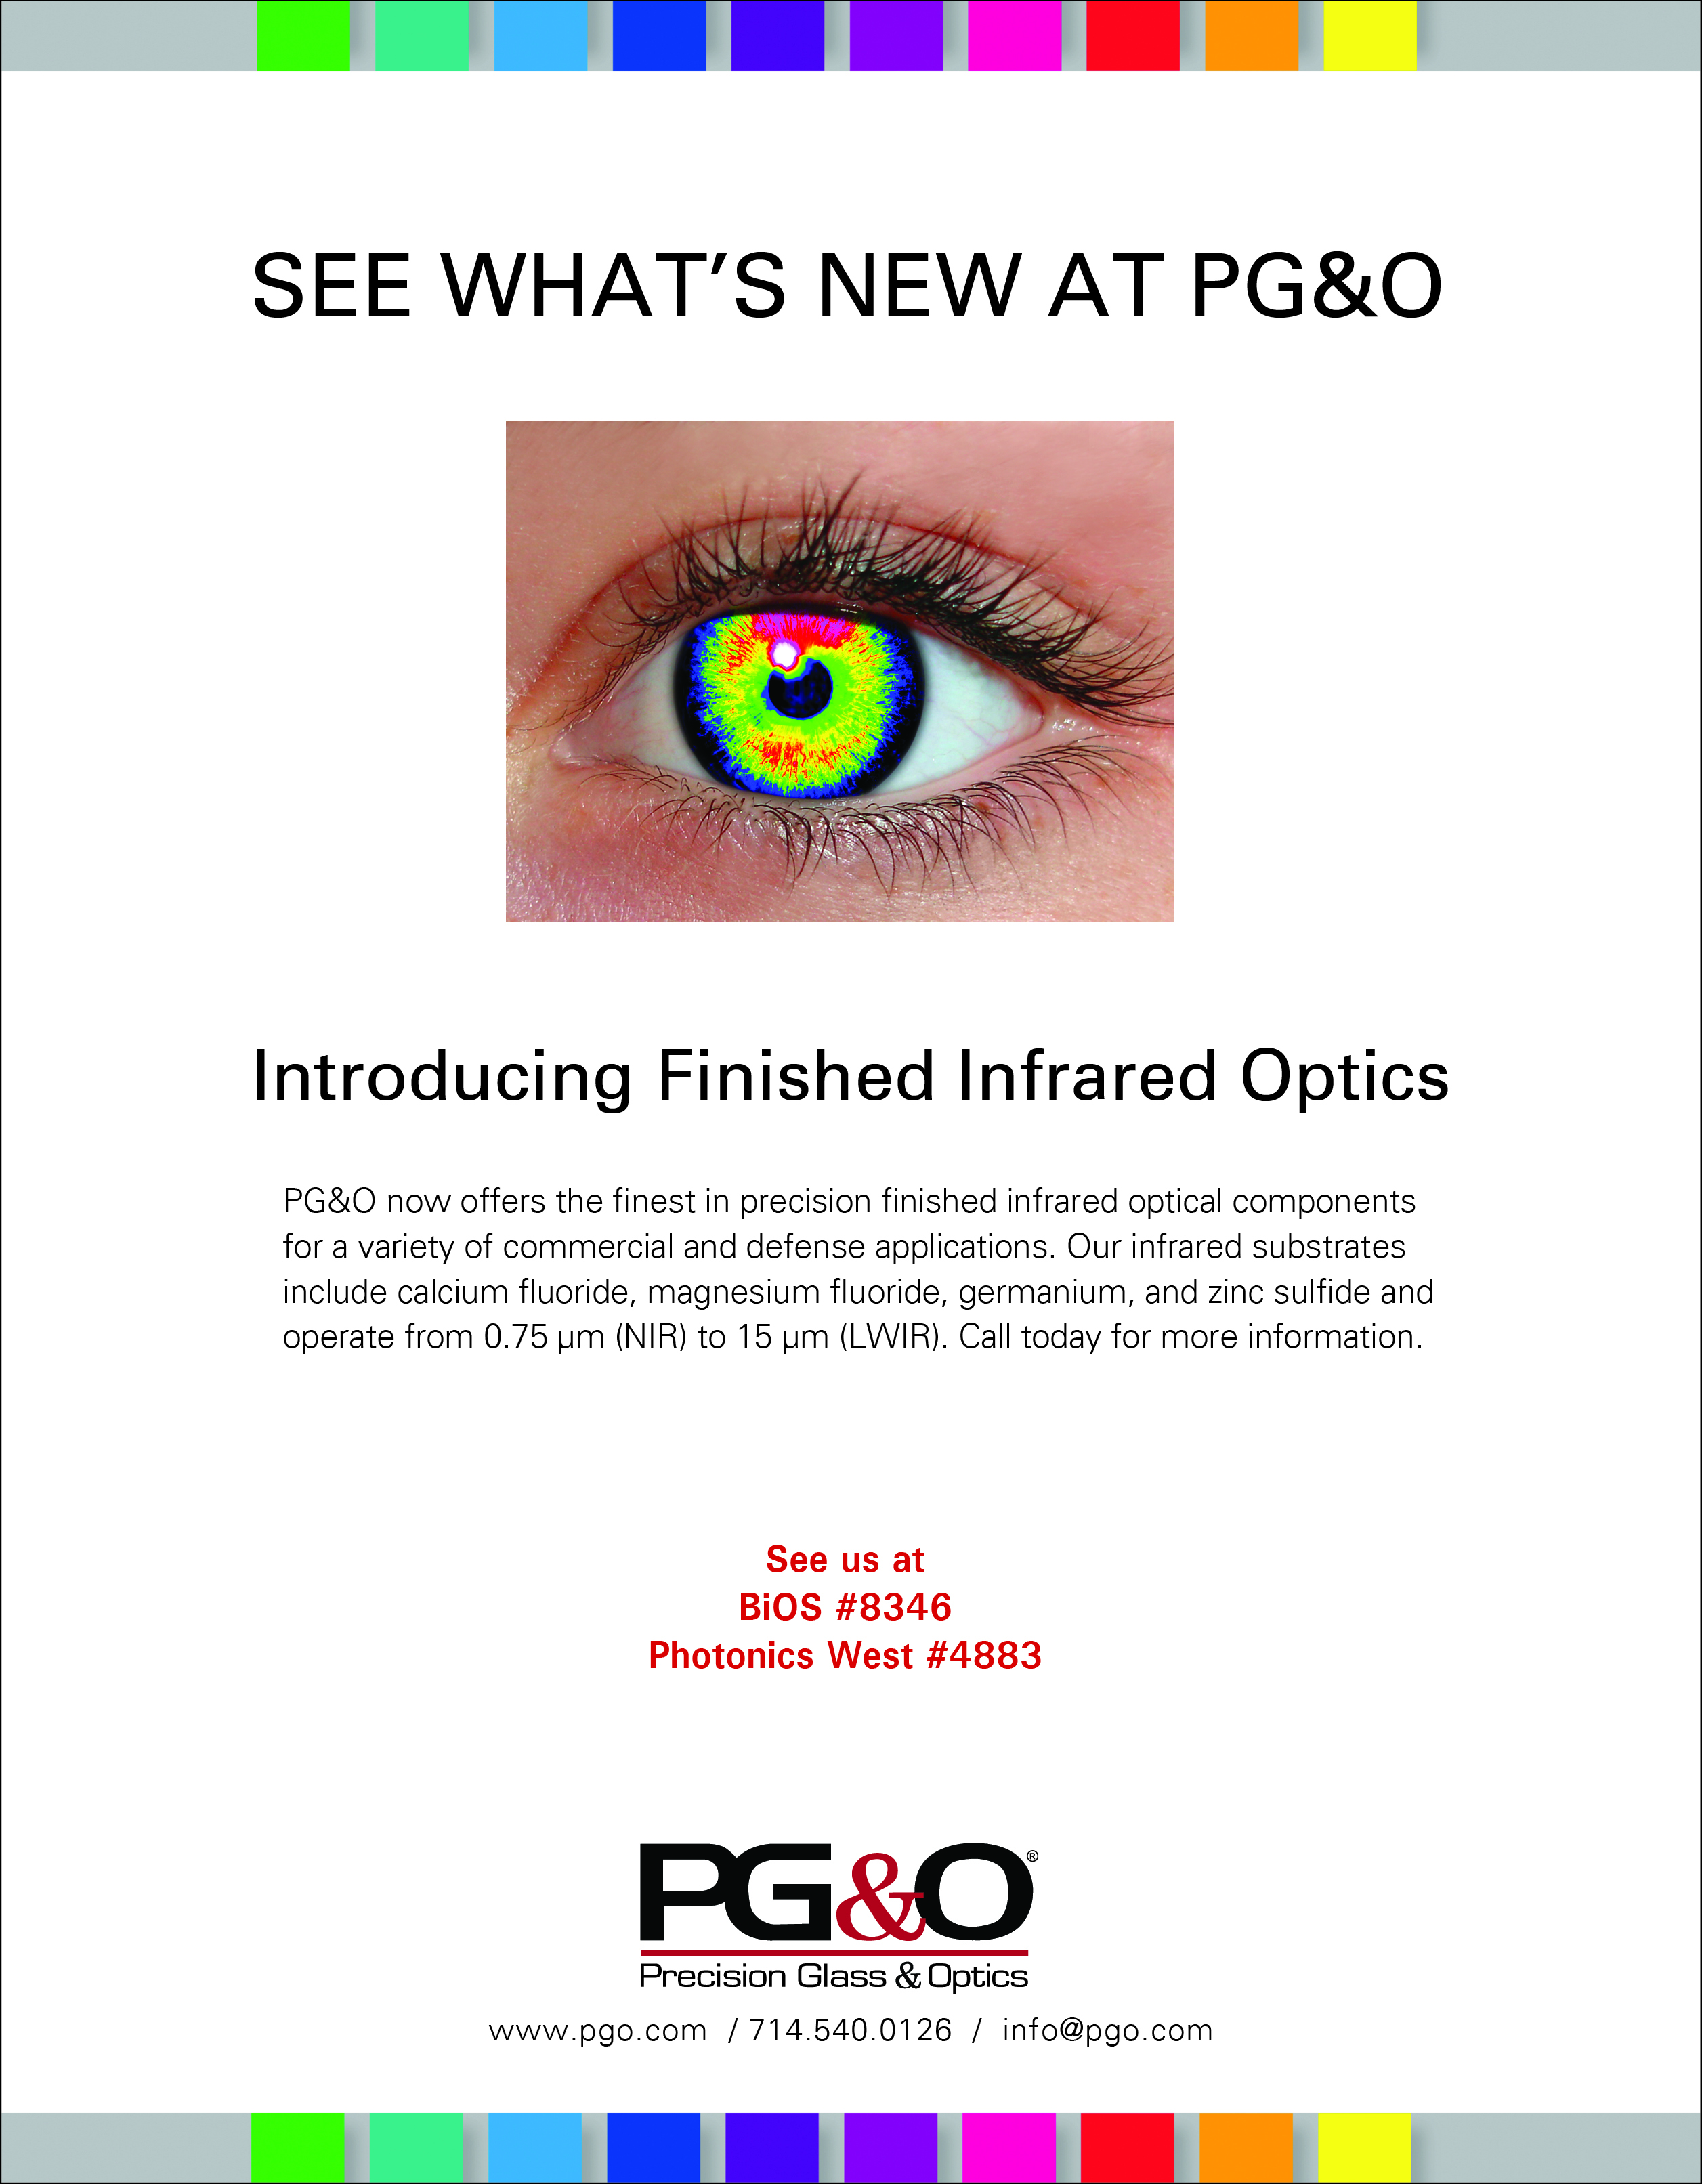 PG&O Finished IR Optics